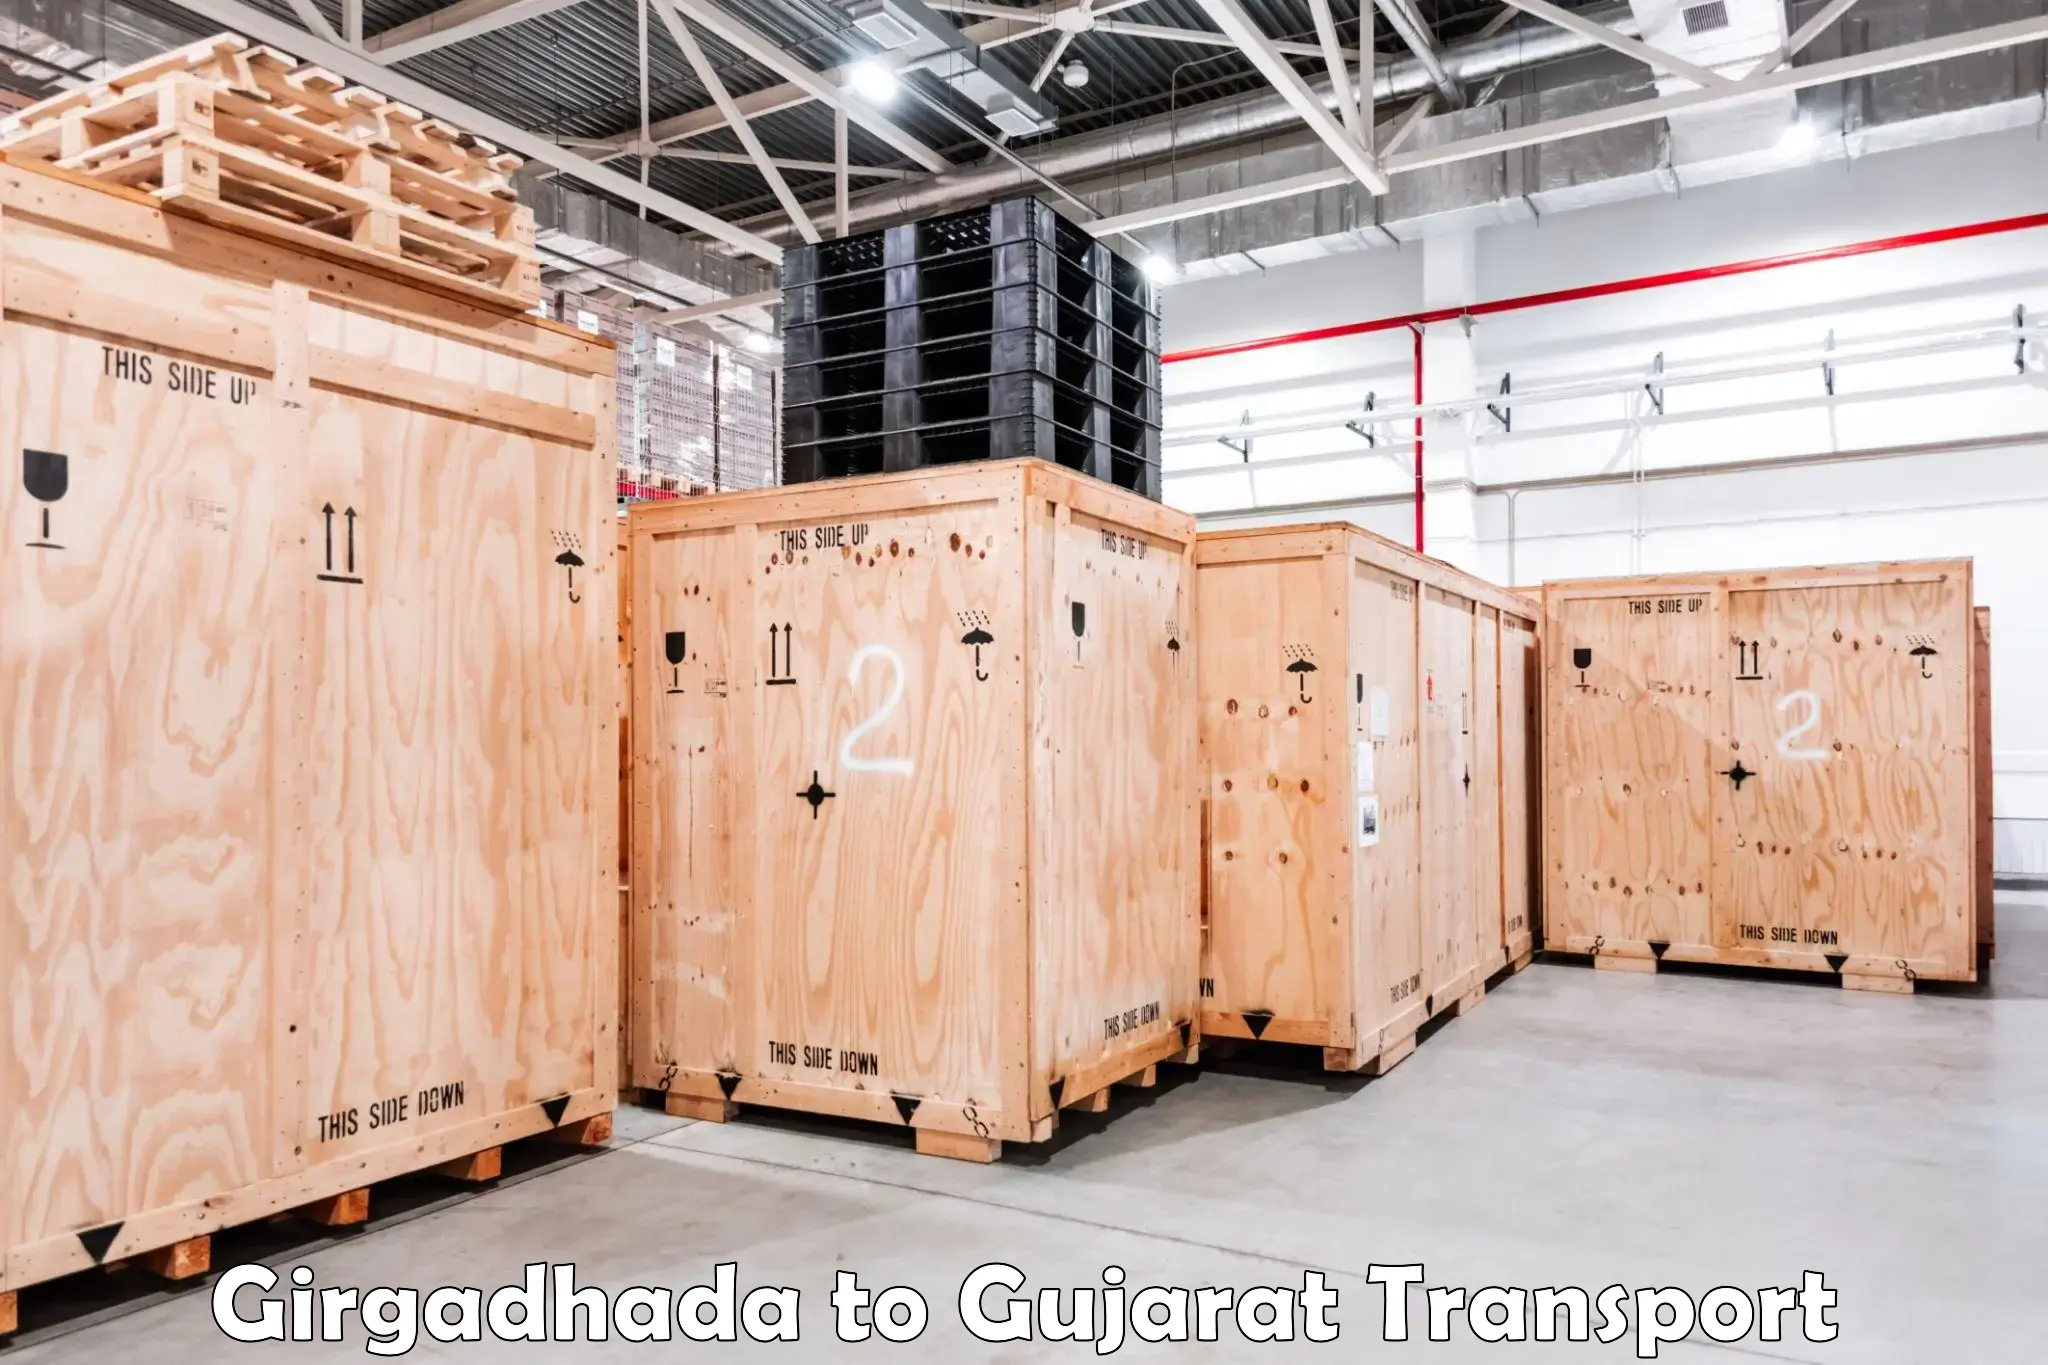 Bike shipping service in Girgadhada to Gujarat